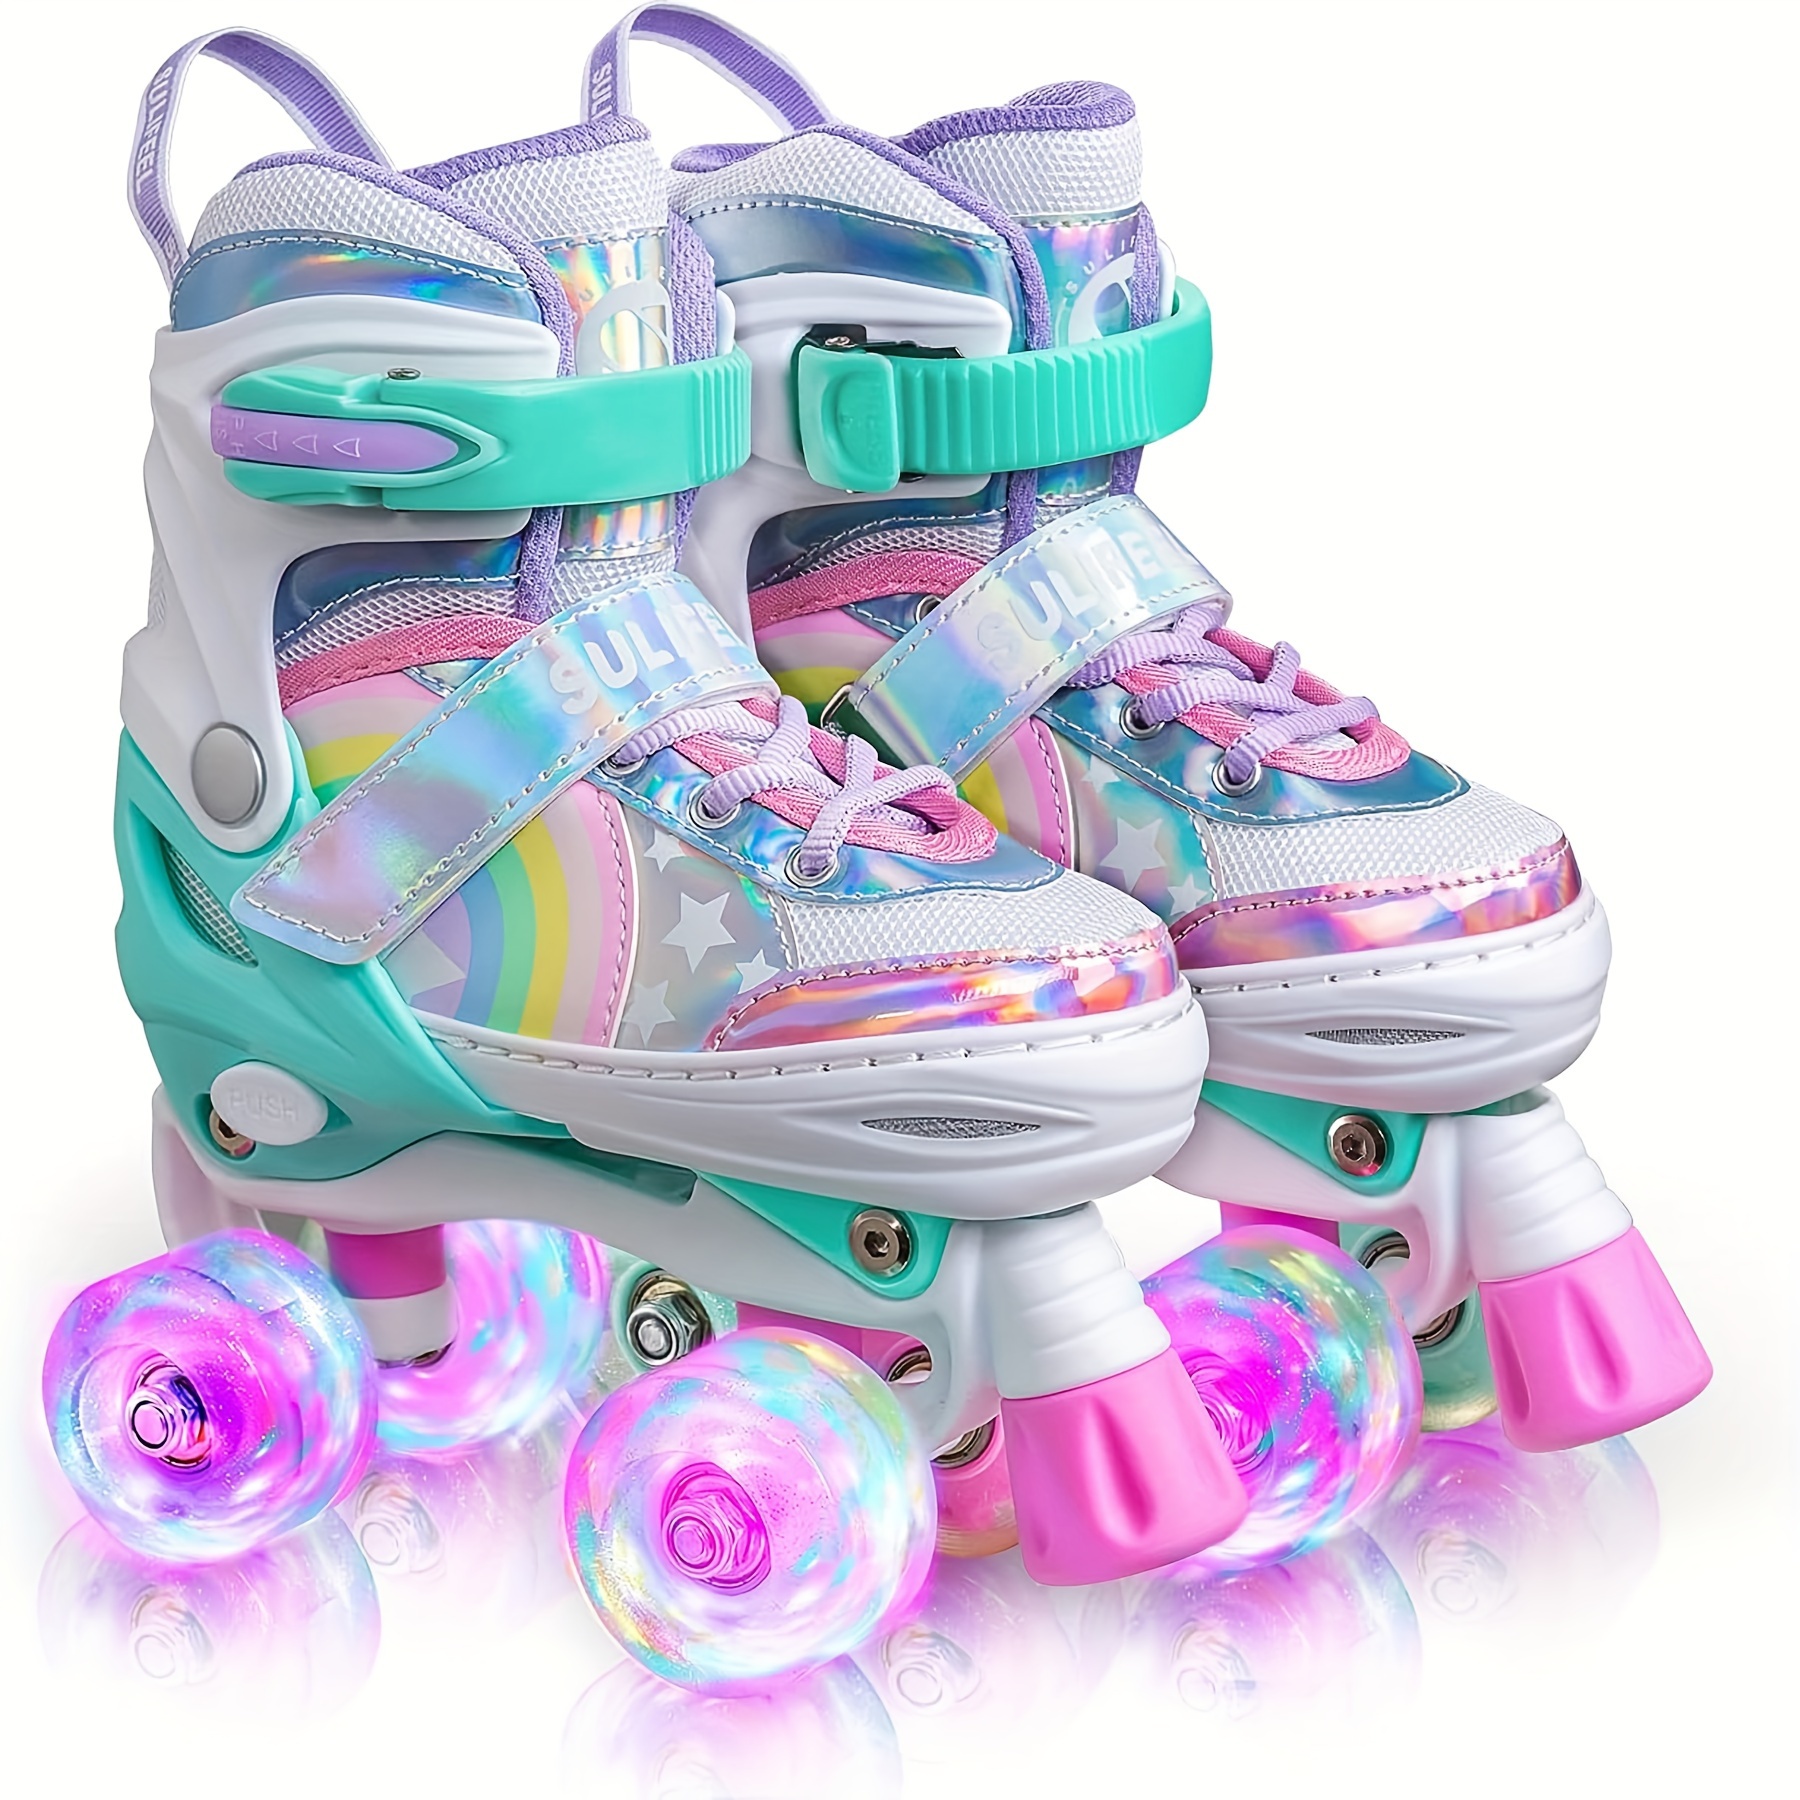 Compre Tamanho ajustável crianças patins de linha dupla patins sapatos  rodas duplas patins para